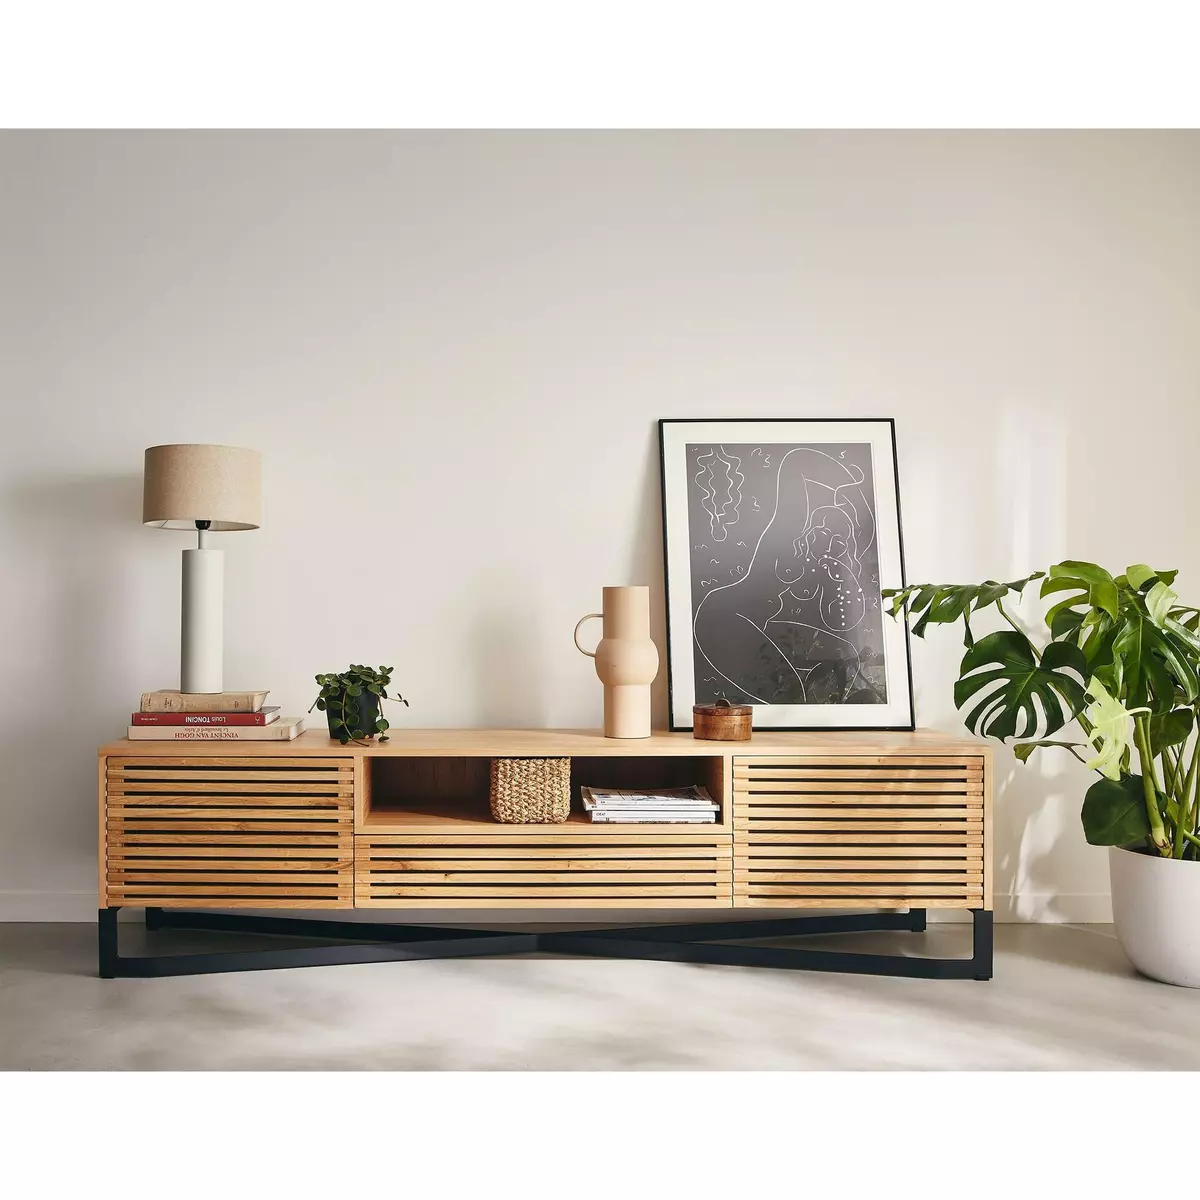 LISA DESIGN Medellin - meuble tv - bois et noir - 200 cm -